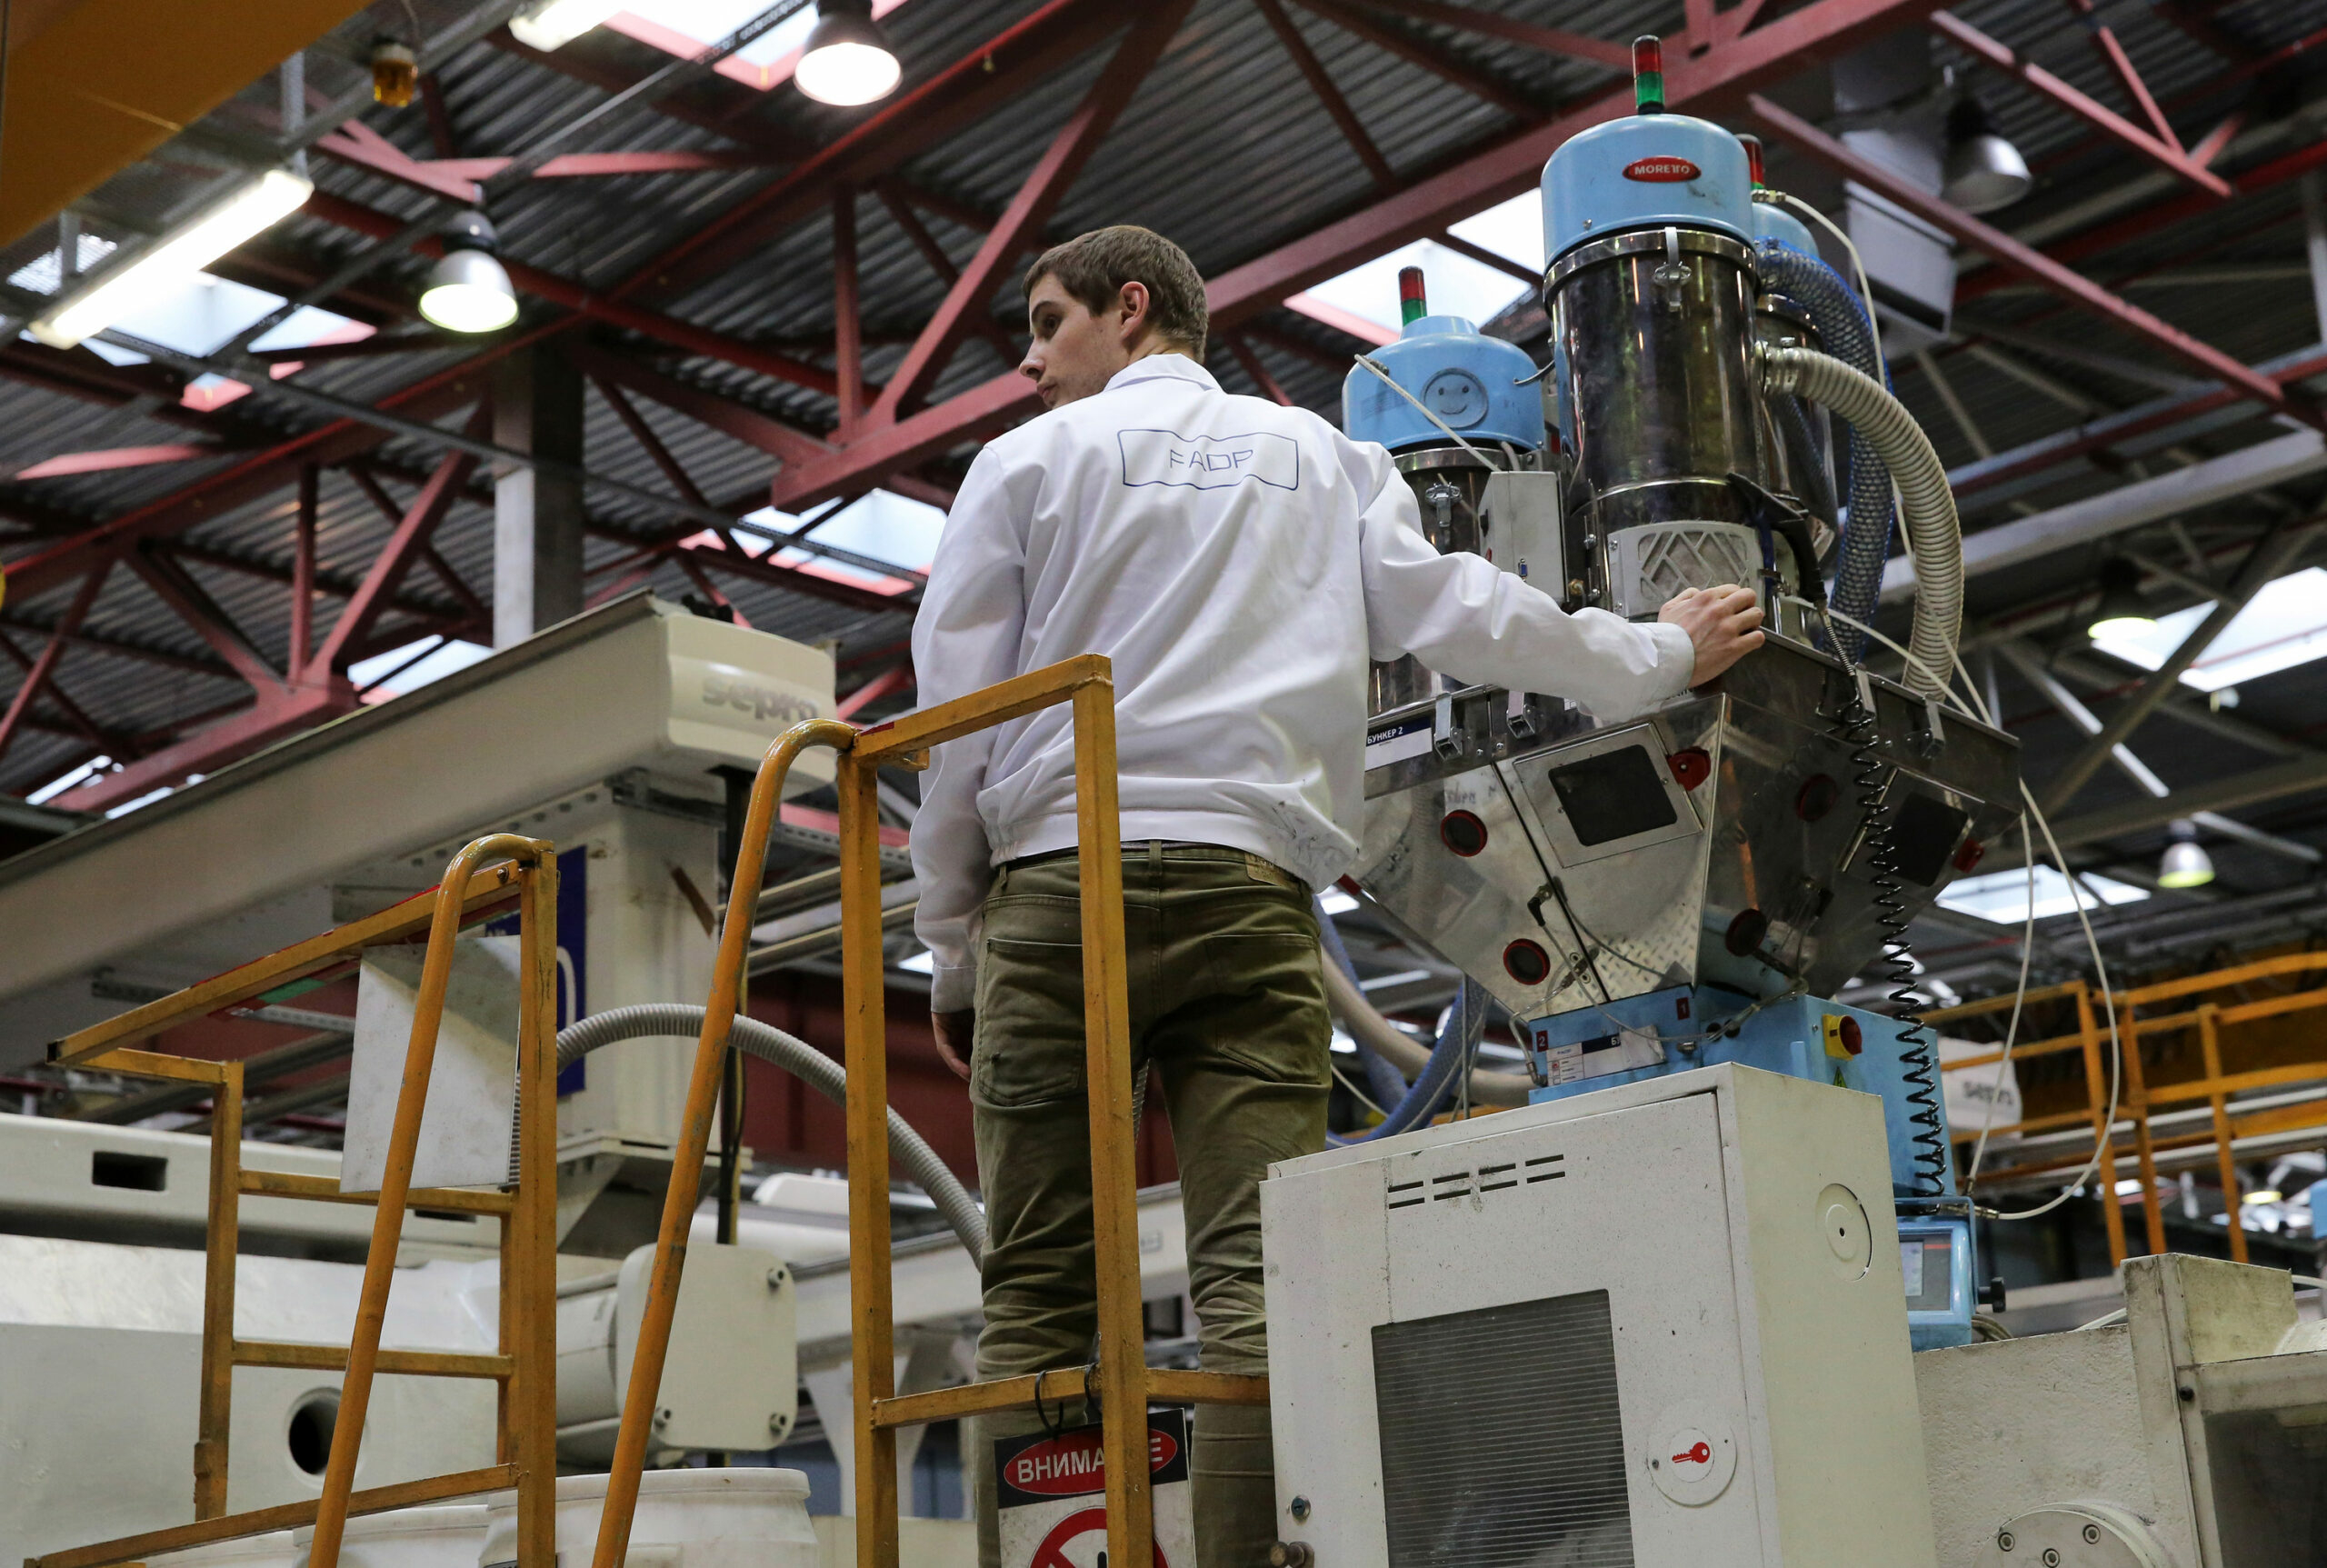 «Юсивай Полимерс Рус» построит завод по переработке полимерных материалов в Подмосковье